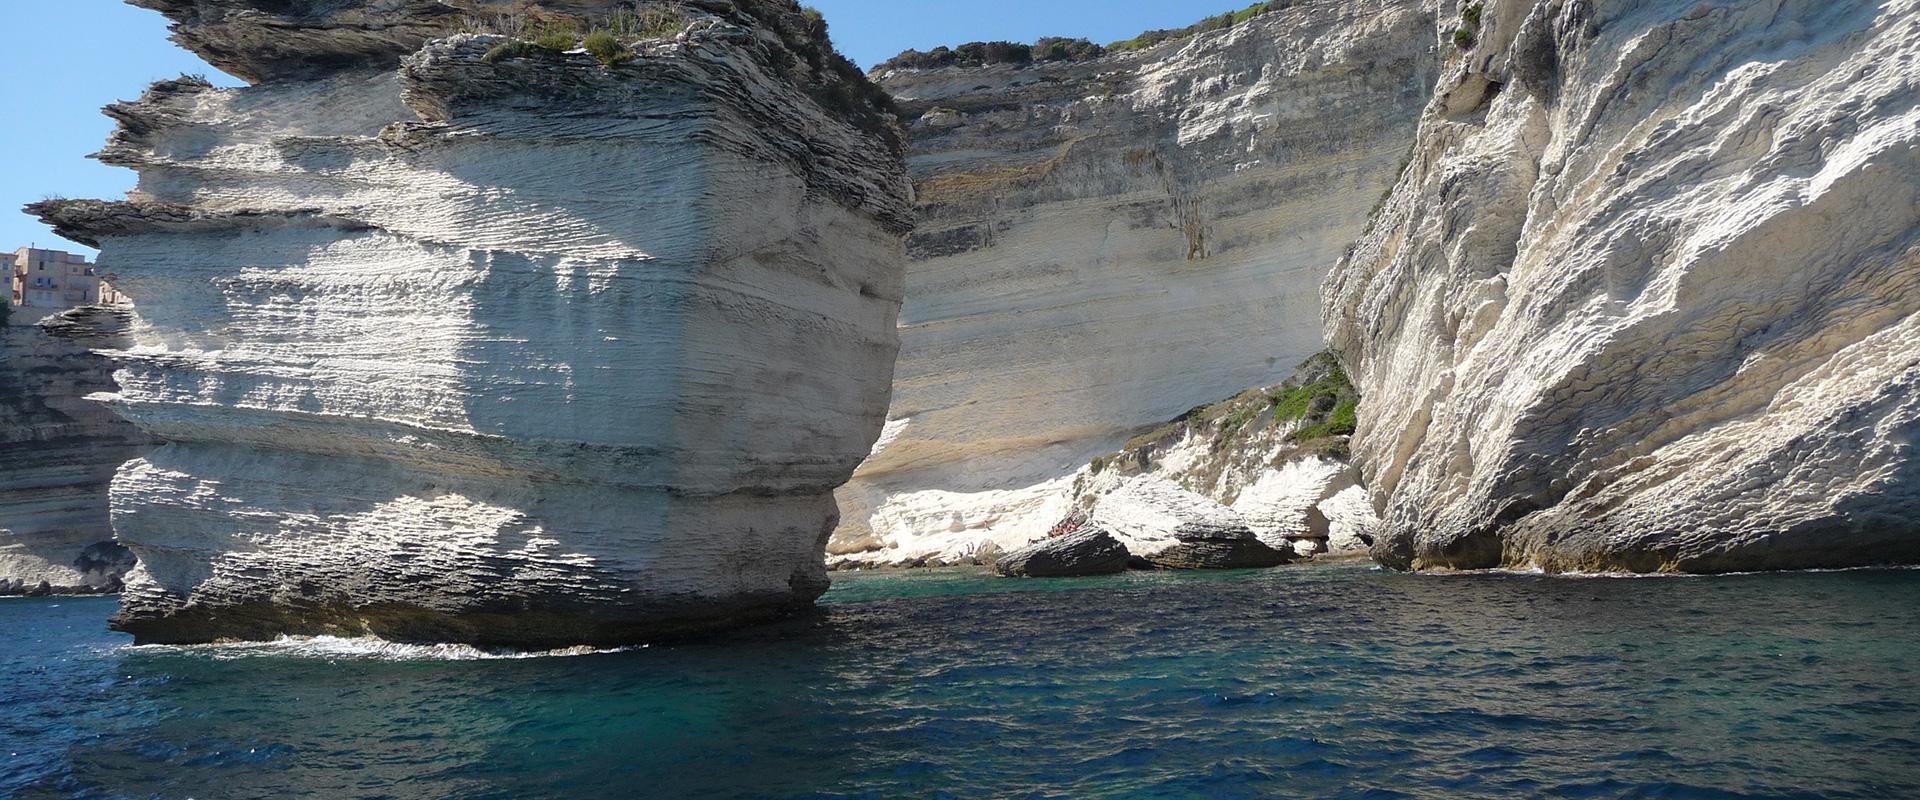 Limestone cliffs, Corsica